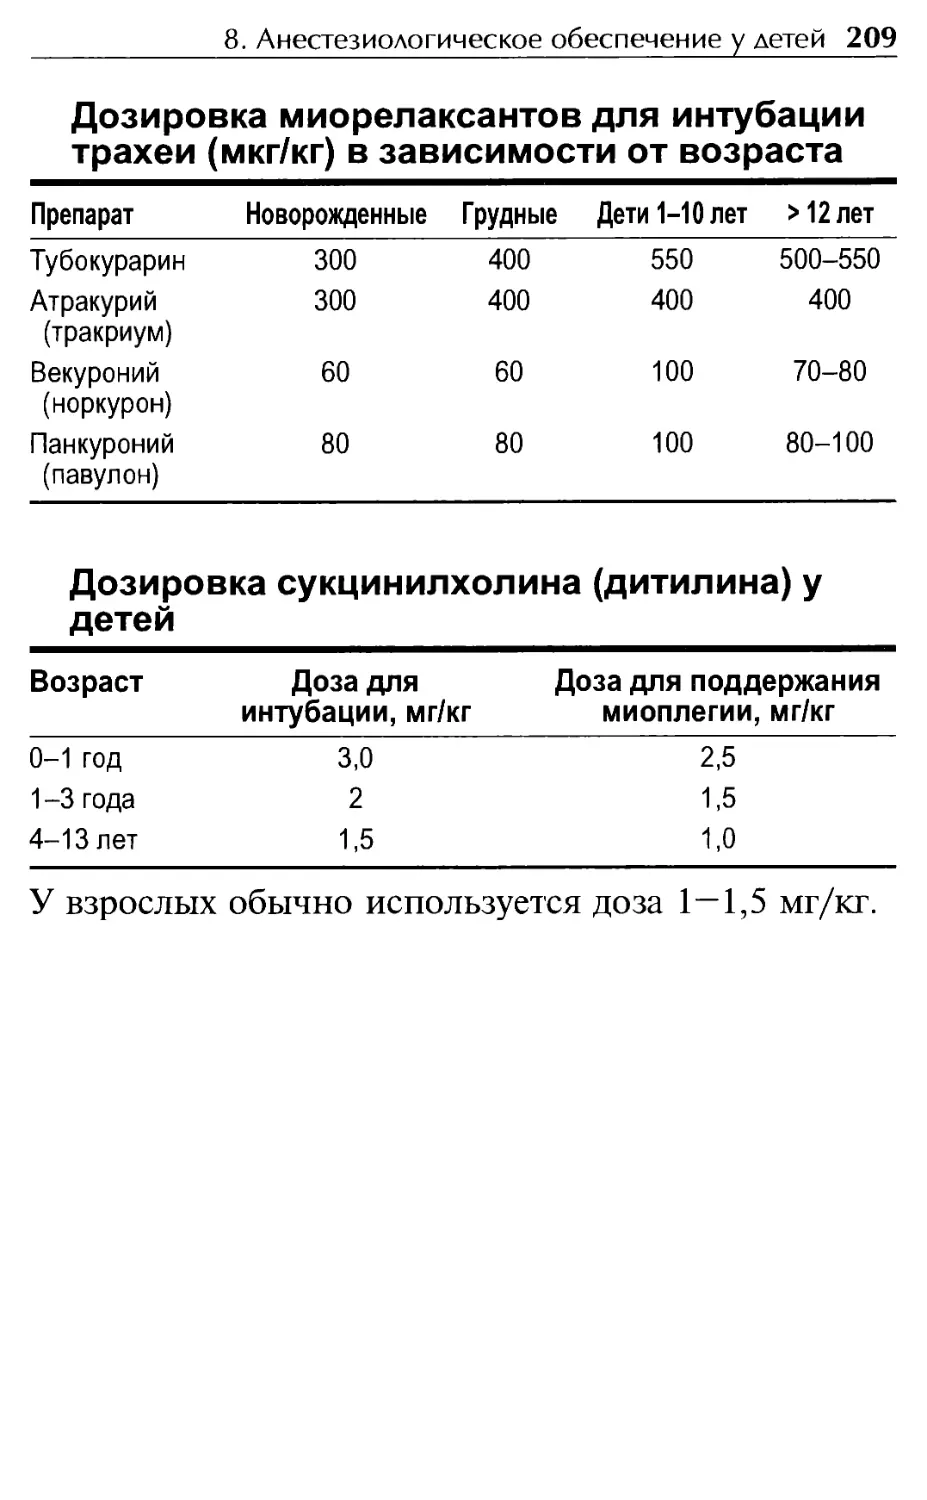 Дозировка миорелаксантов для интубации трахеи в зависимости от возраста